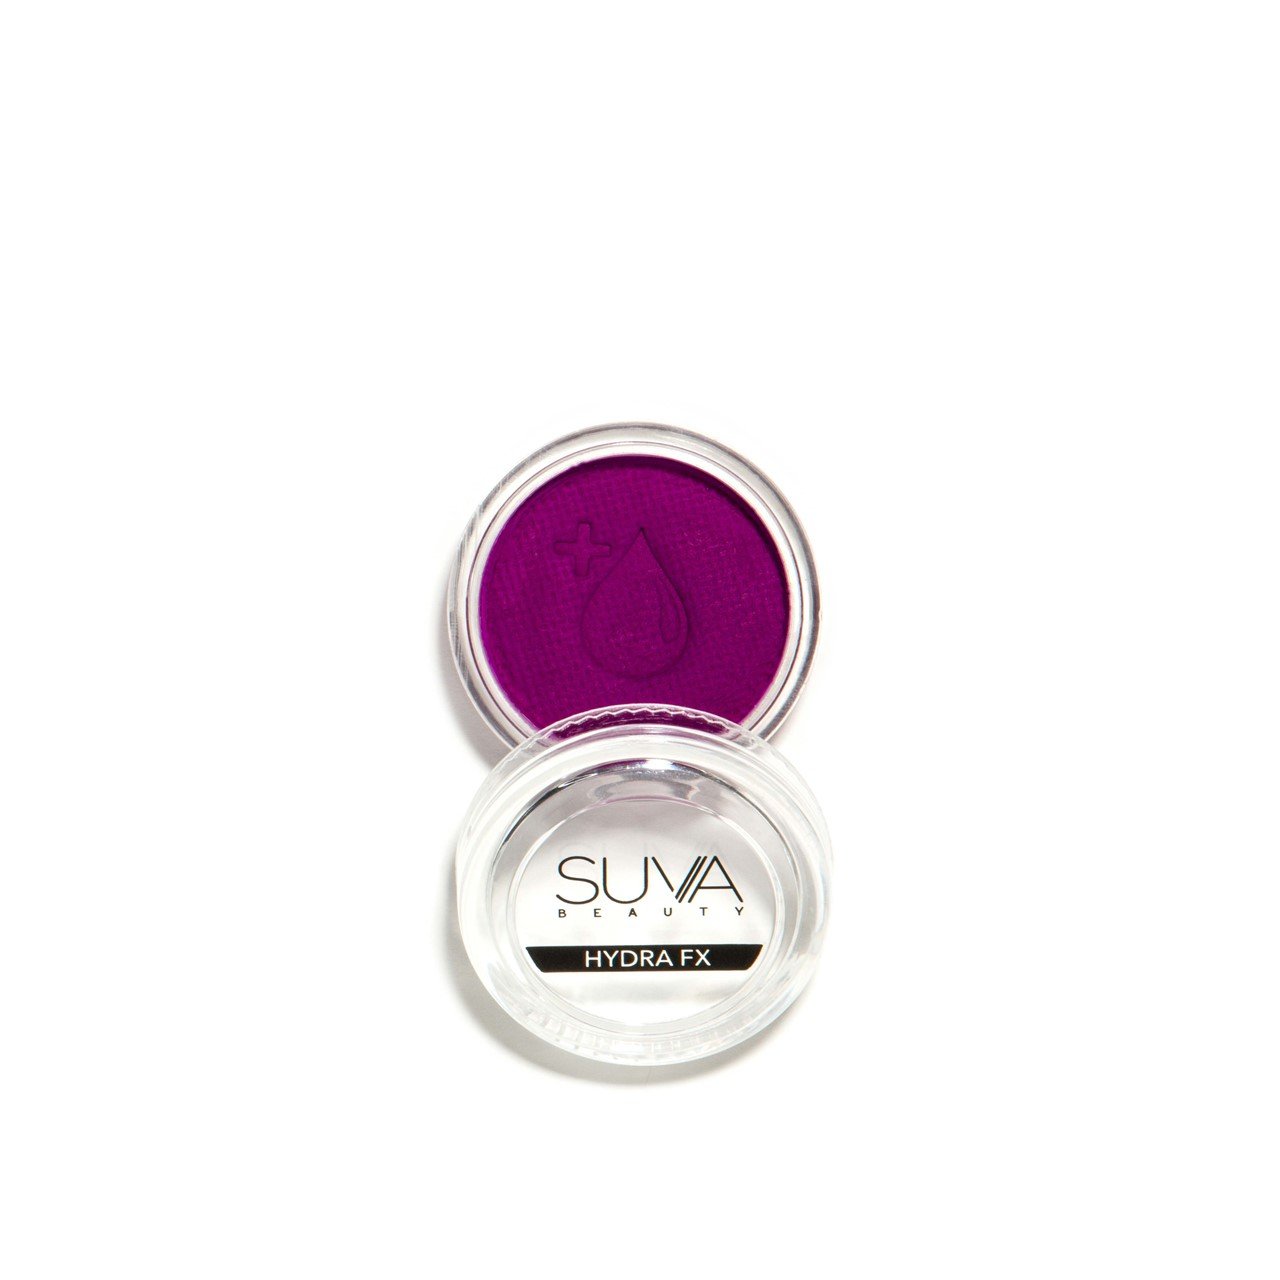 SUVA Beauty Hydra FX Grape Soda UV Body Art 10g